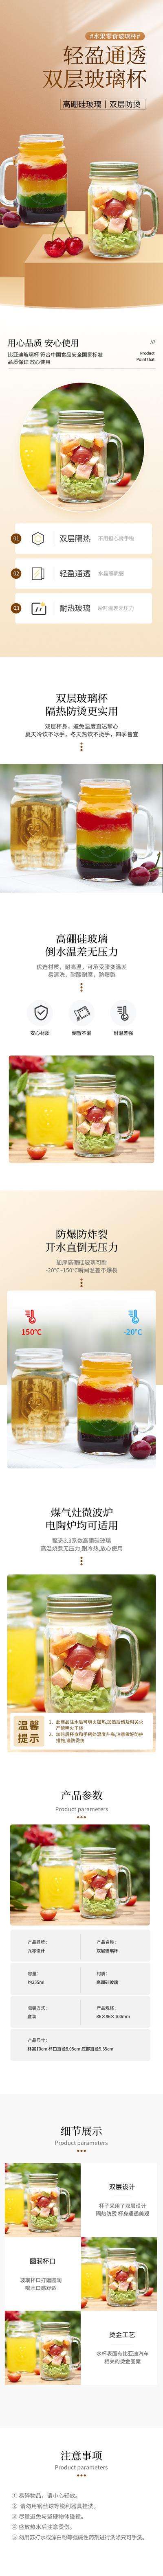 南门网 广告 海报 电商 水果 零食 器皿 玻璃杯 详情页